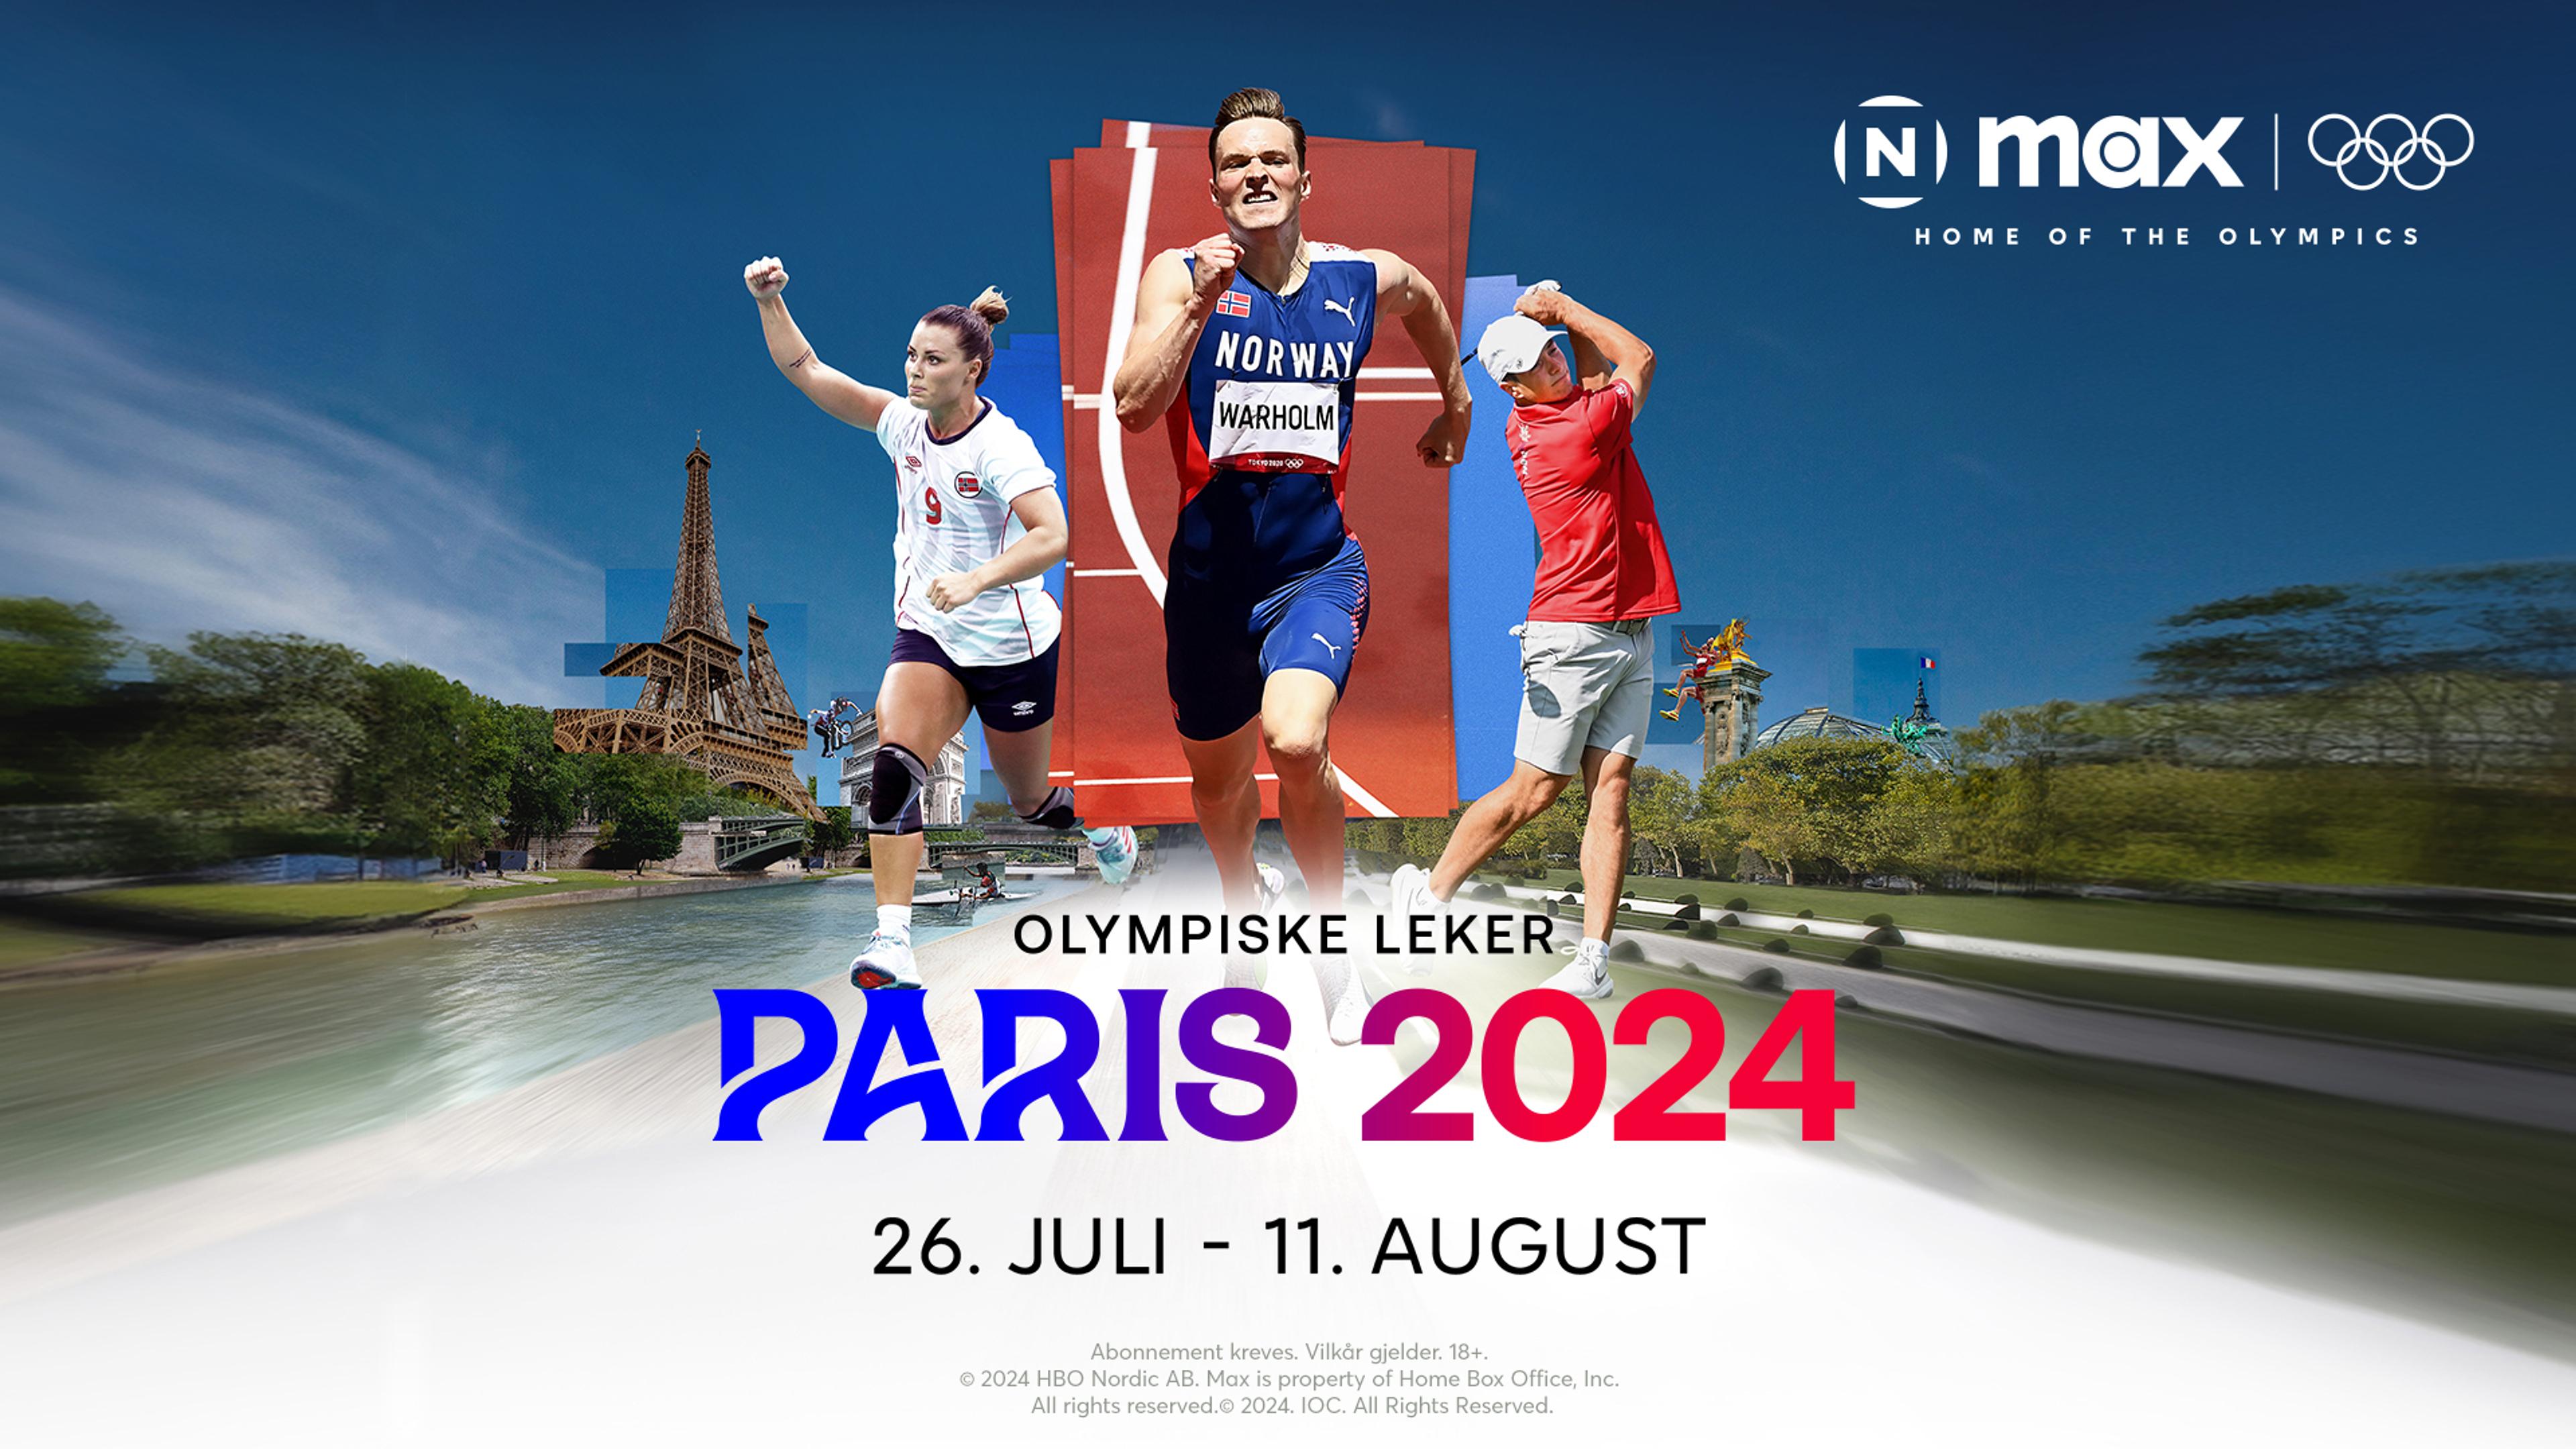 Promobildet for de Olympiske leker Paris 2024 fra Max.